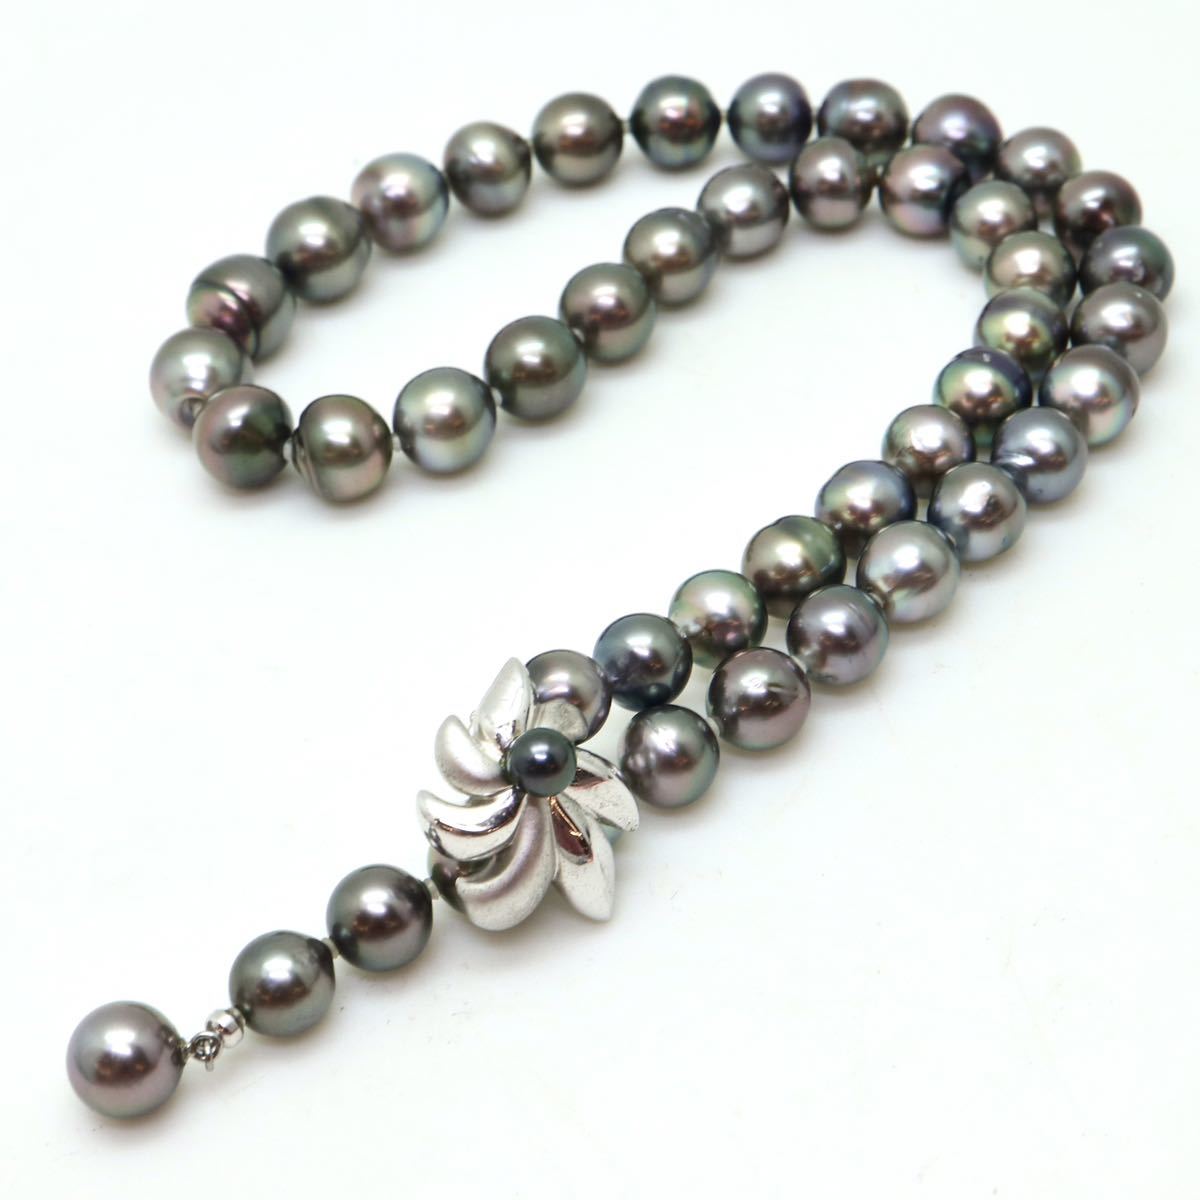 テリ良し!!《南洋黒蝶真珠ネックレス》J 8.0-11.0mm珠 58.8g 48cm pearl necklace ジュエリー jewelry EA5/EB1_画像7